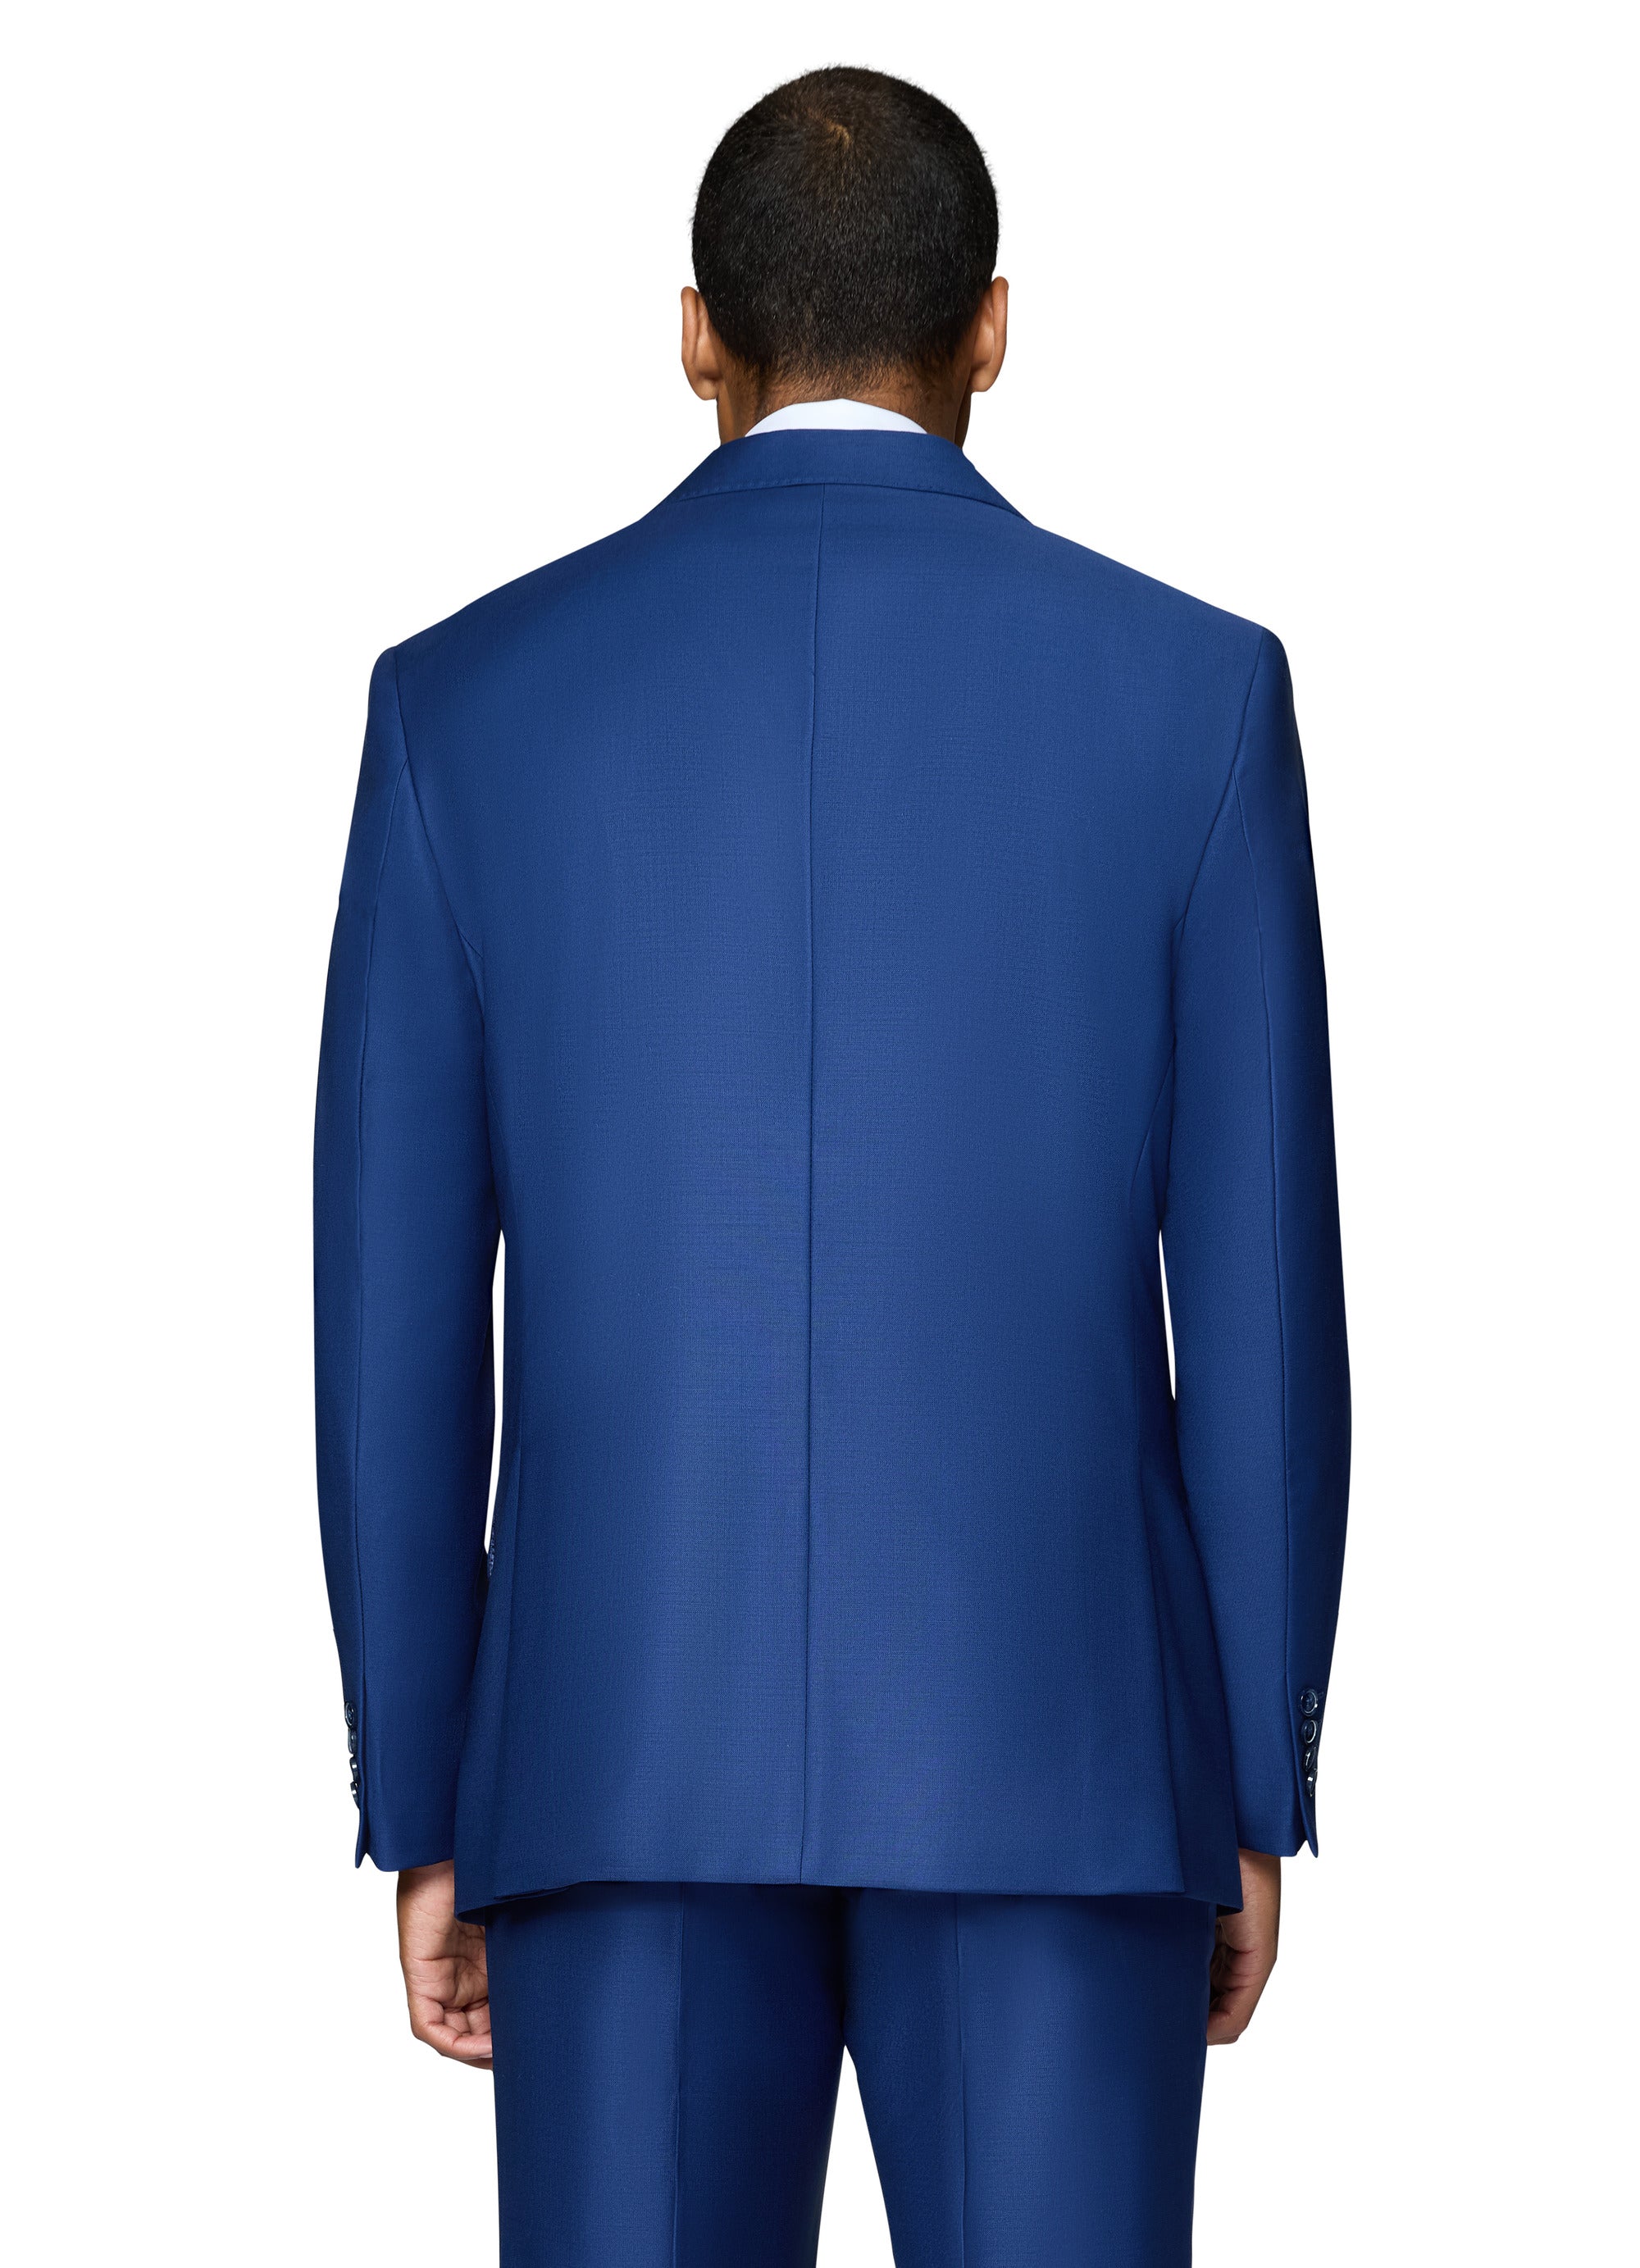 Berragamo Essex Elegant - Faille Wool Solid Suit - New Blue